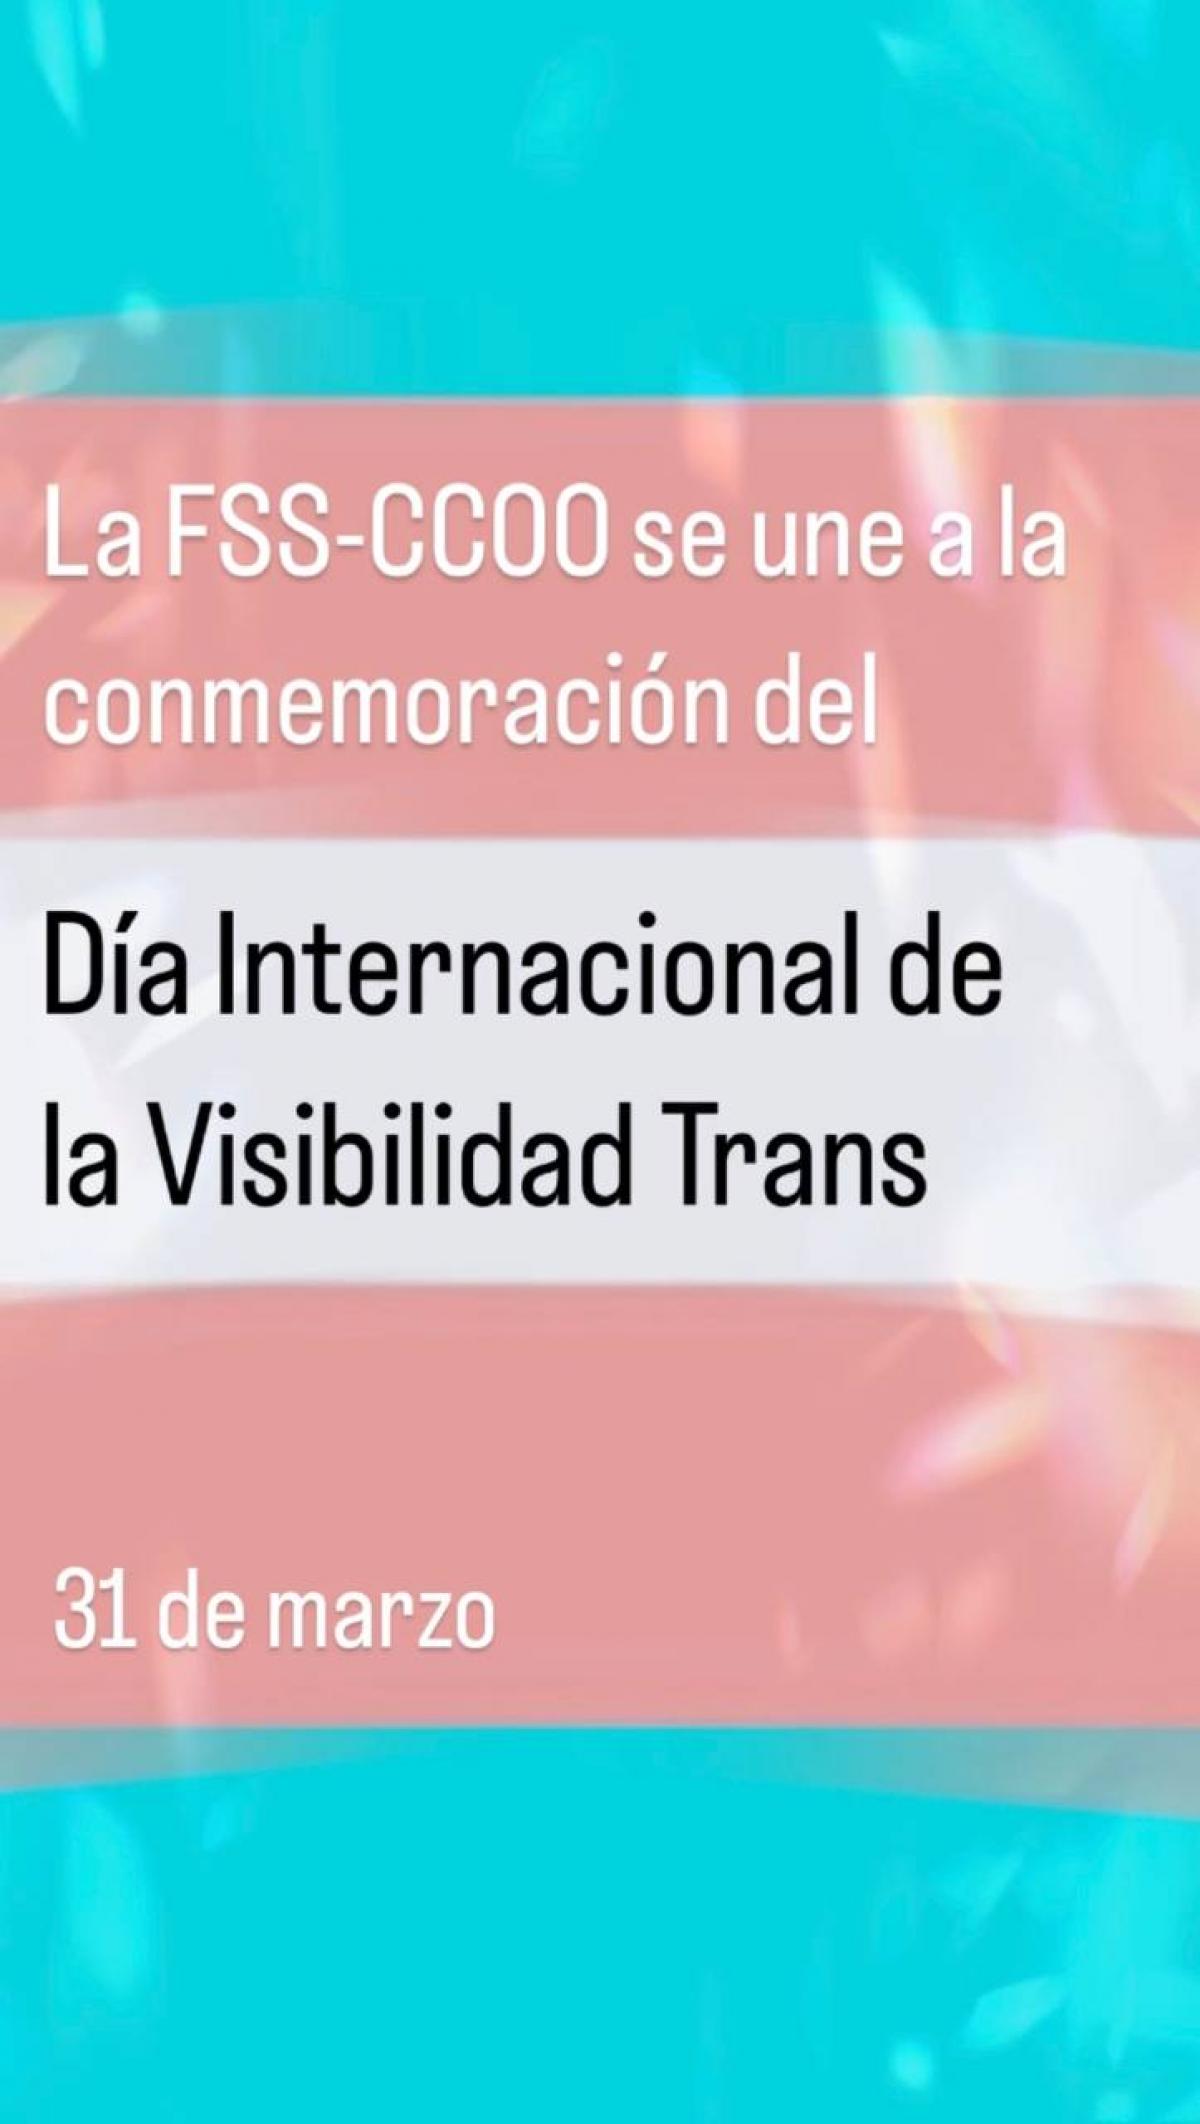 31 de marzo, Da Internacional de la Visibilidad Trans